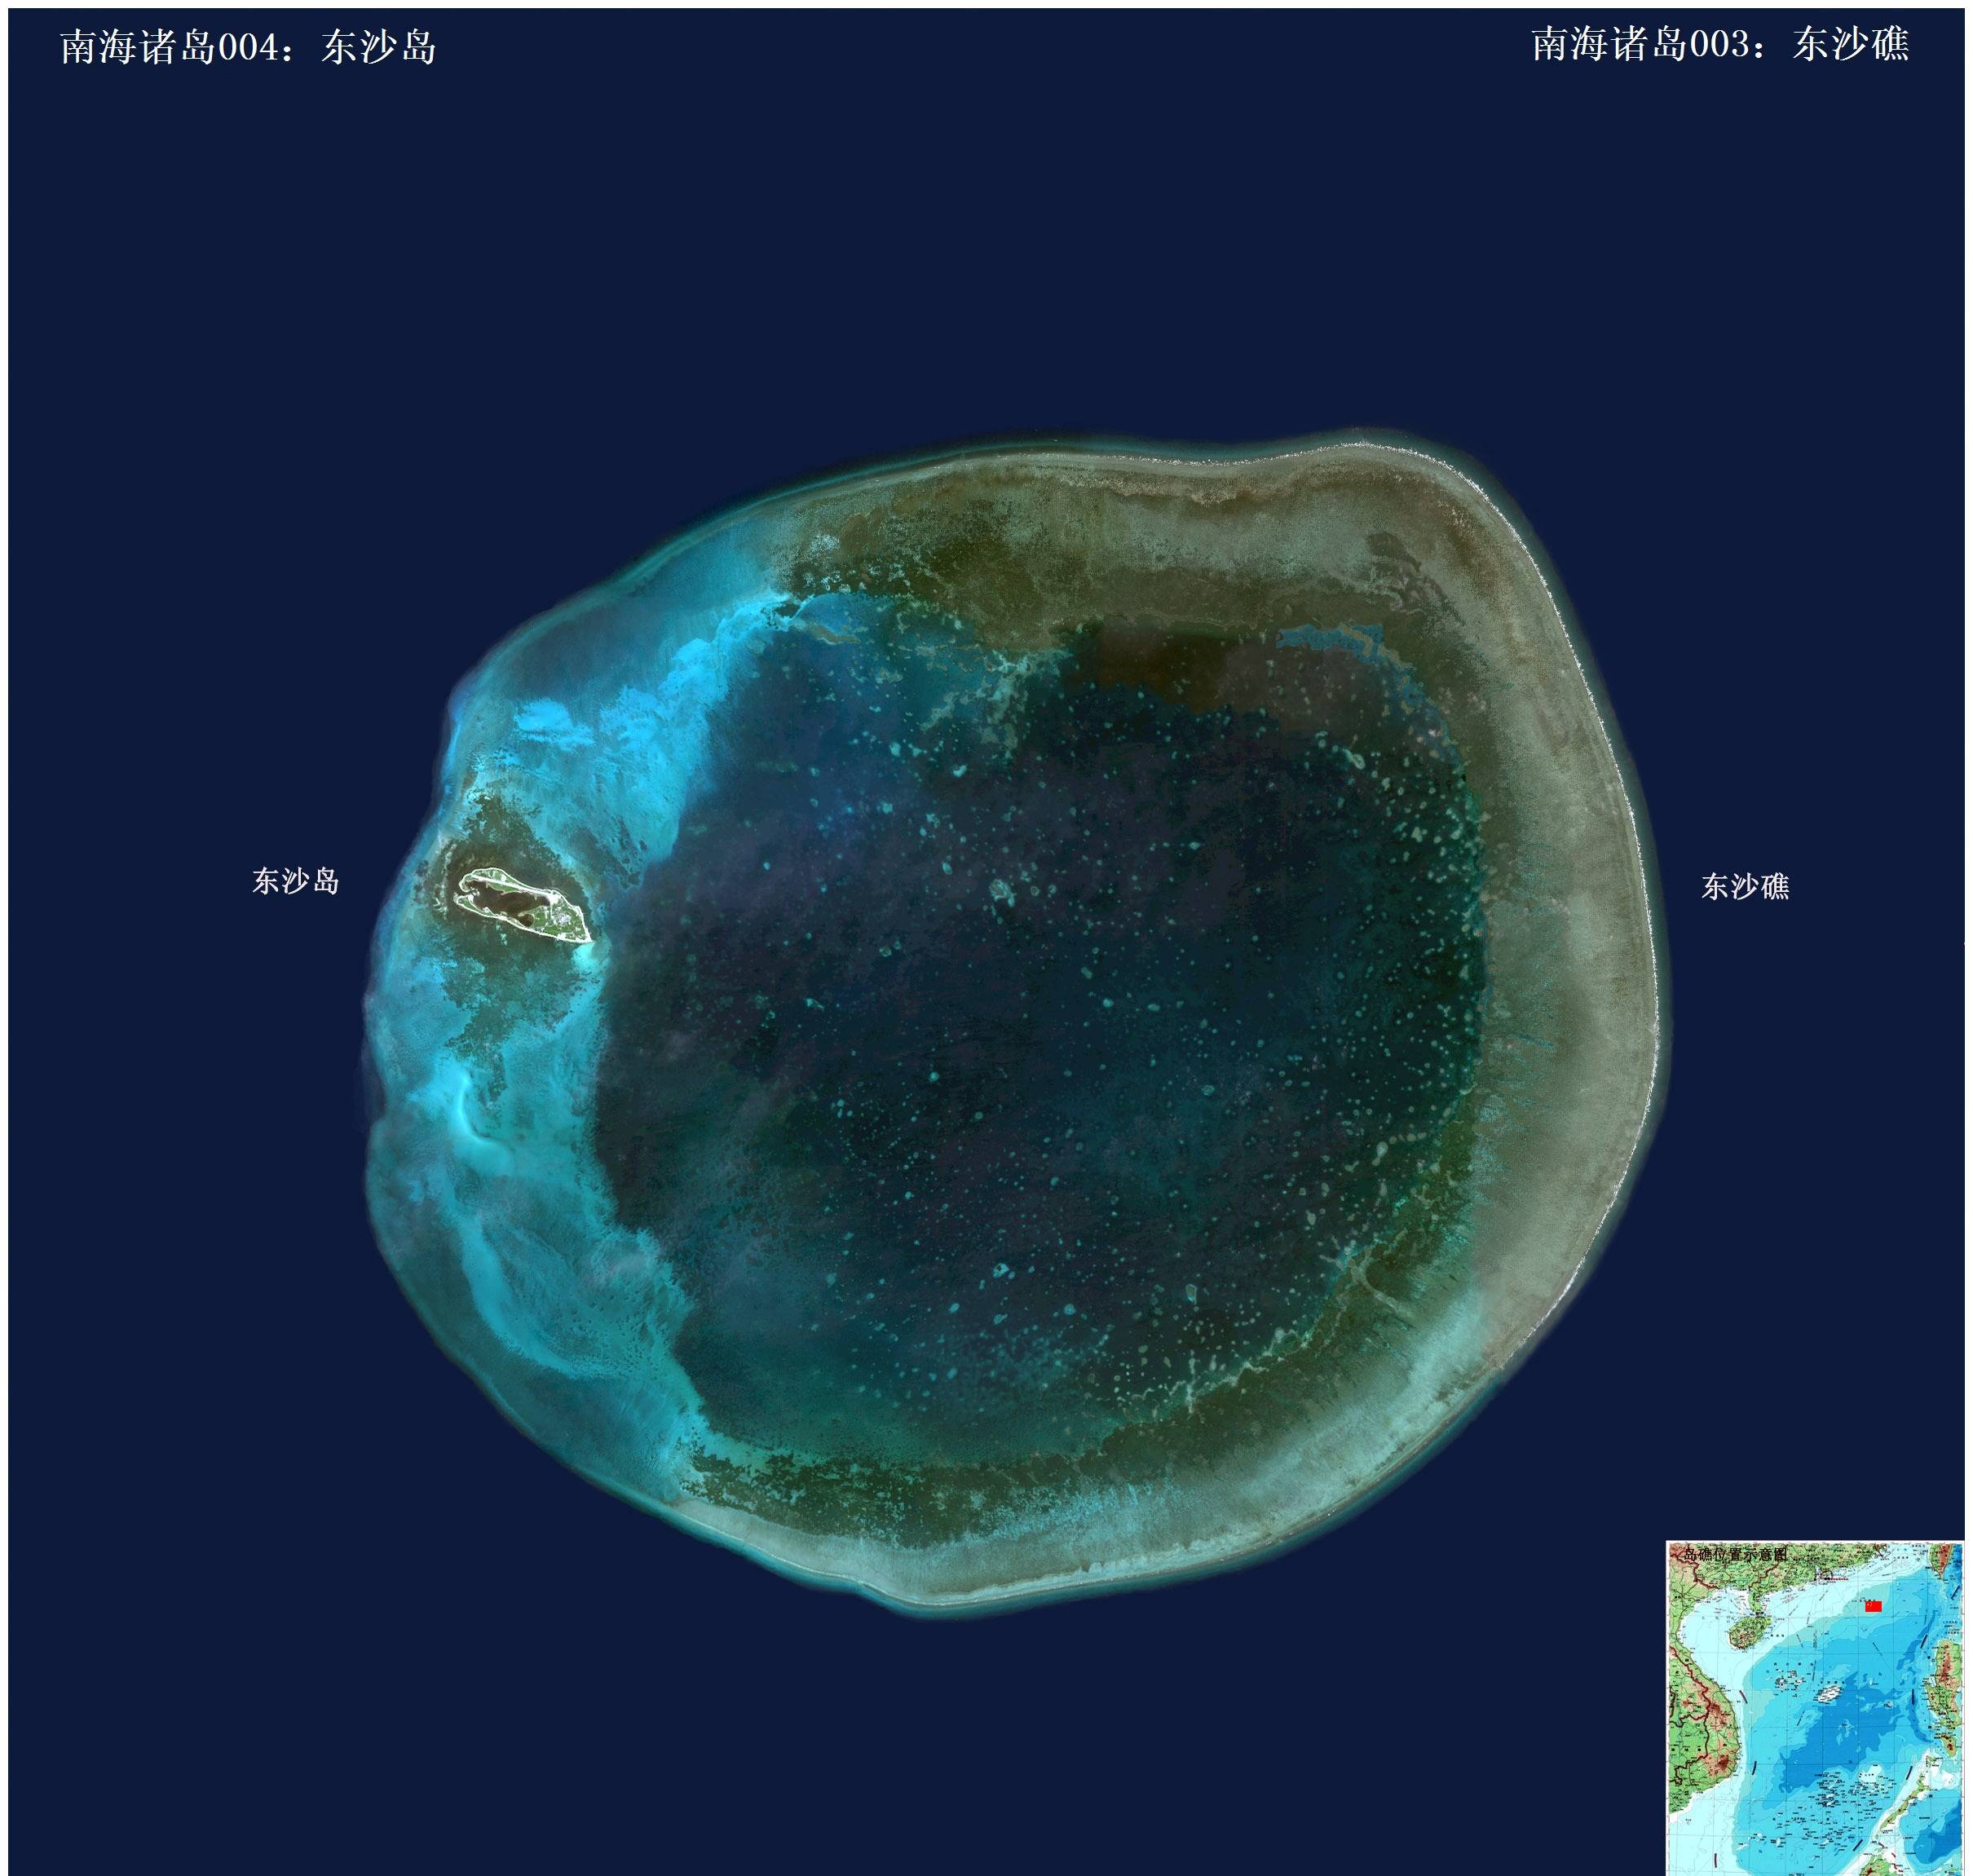 原创东沙环礁:距广东仅260公里,价值巨大,面积达420平方公里